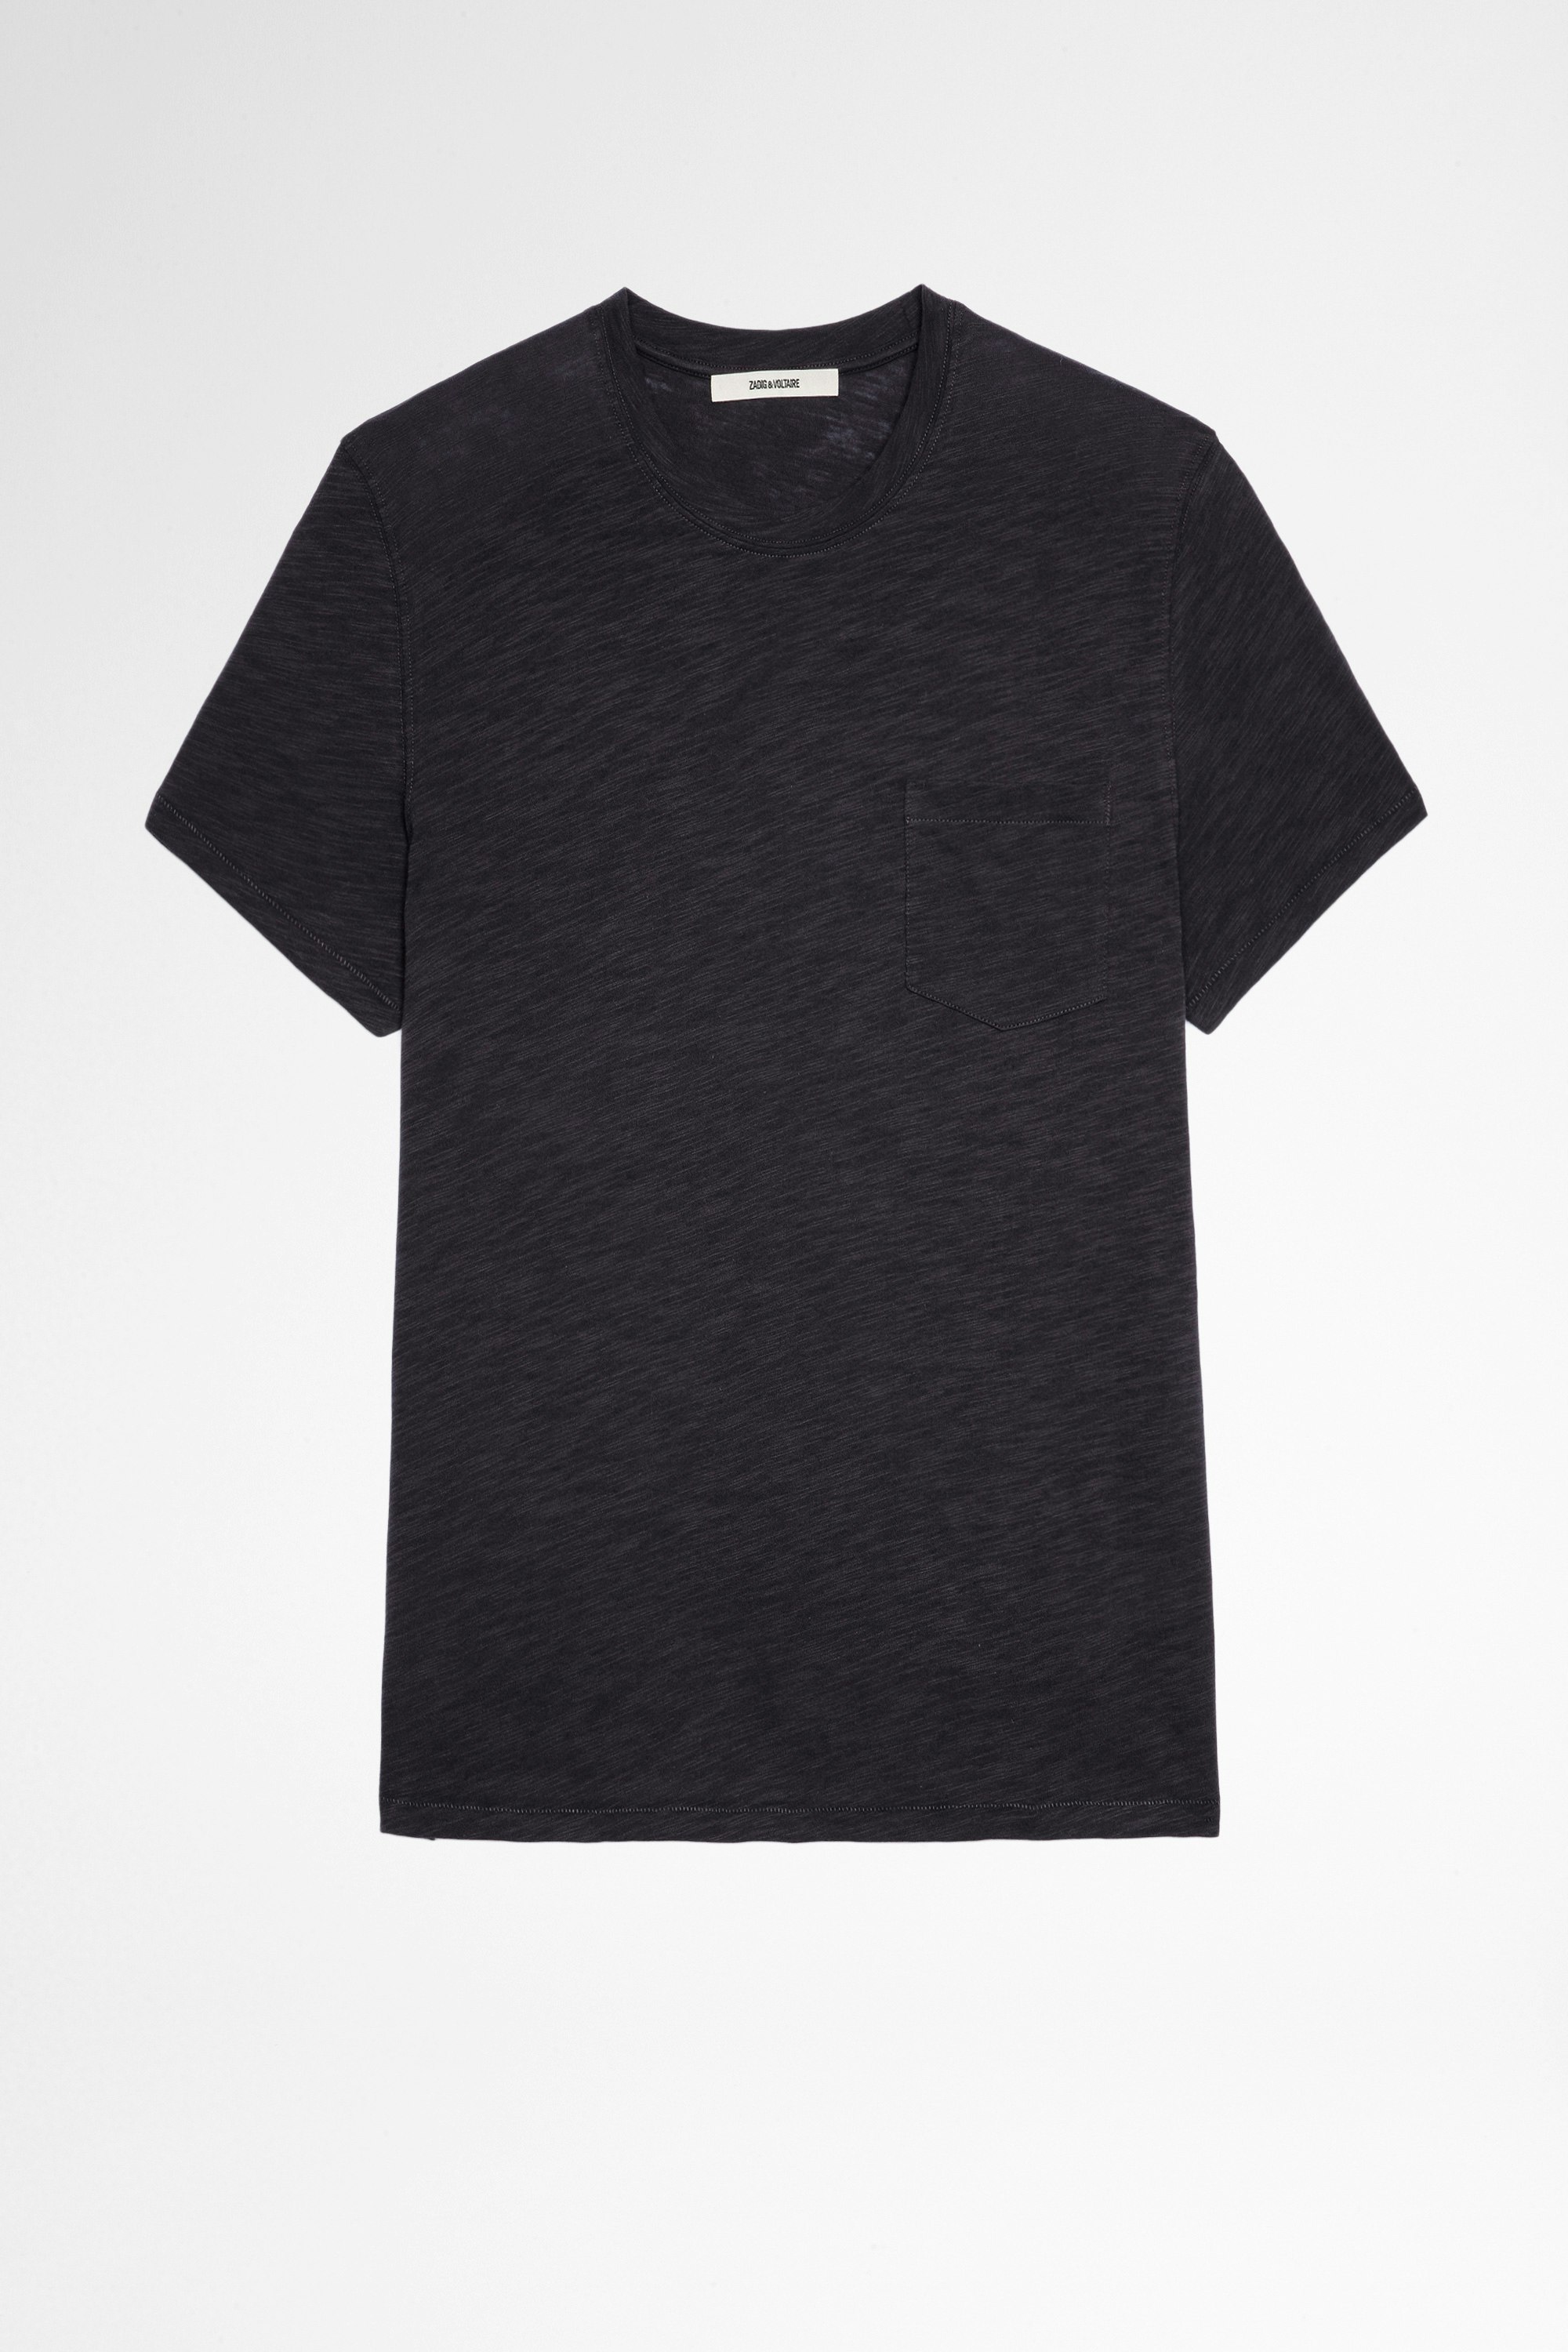 Camiseta Stockholm Flamme Camiseta negra de algodón con impresión de calavera para hombre